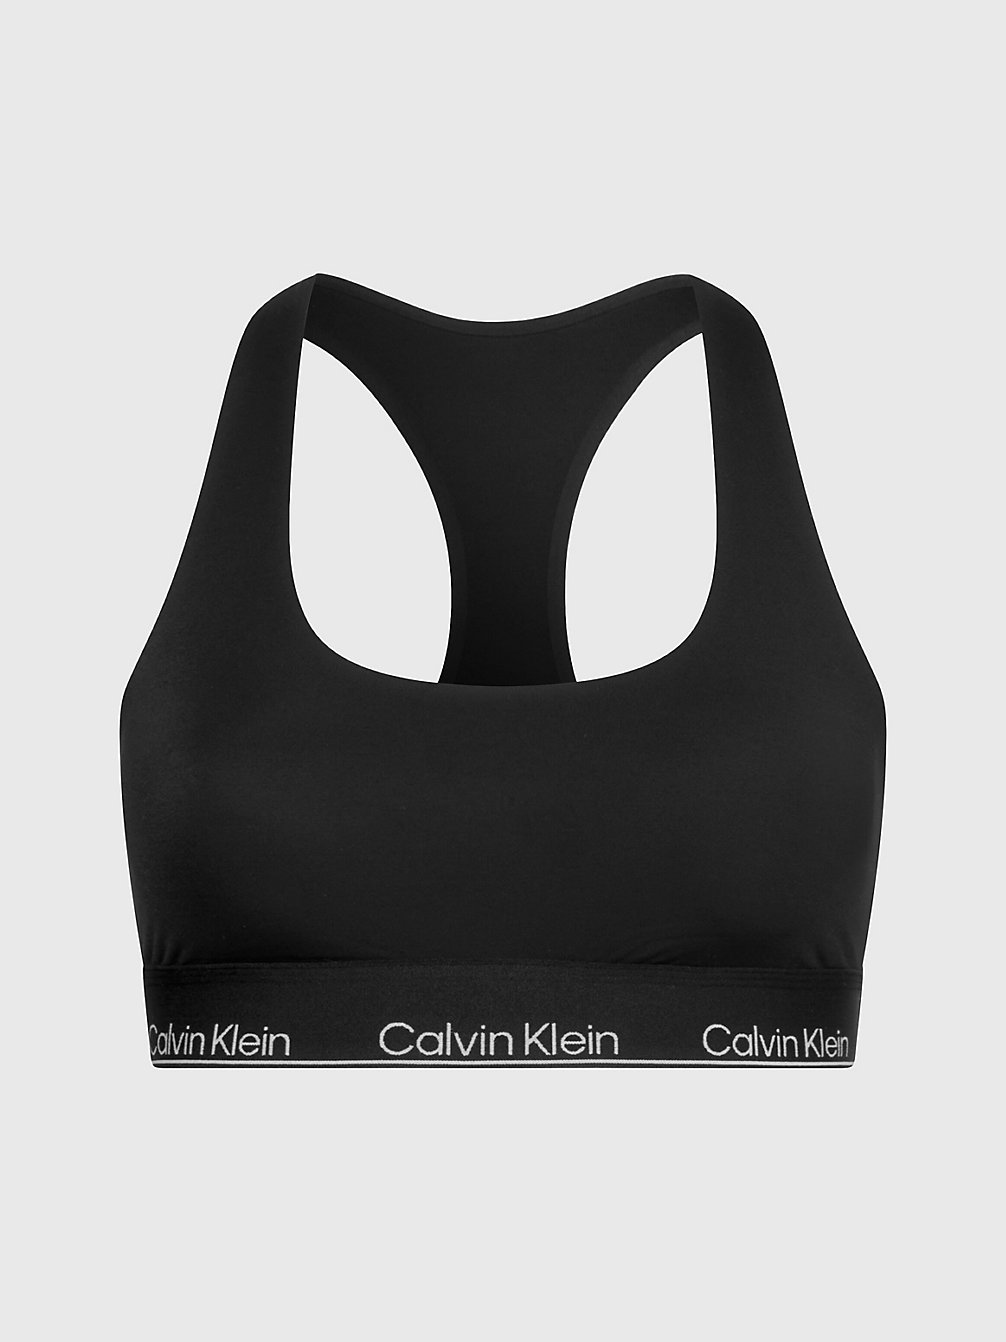 BLACK Bralette - Modern Performance undefined dames Calvin Klein